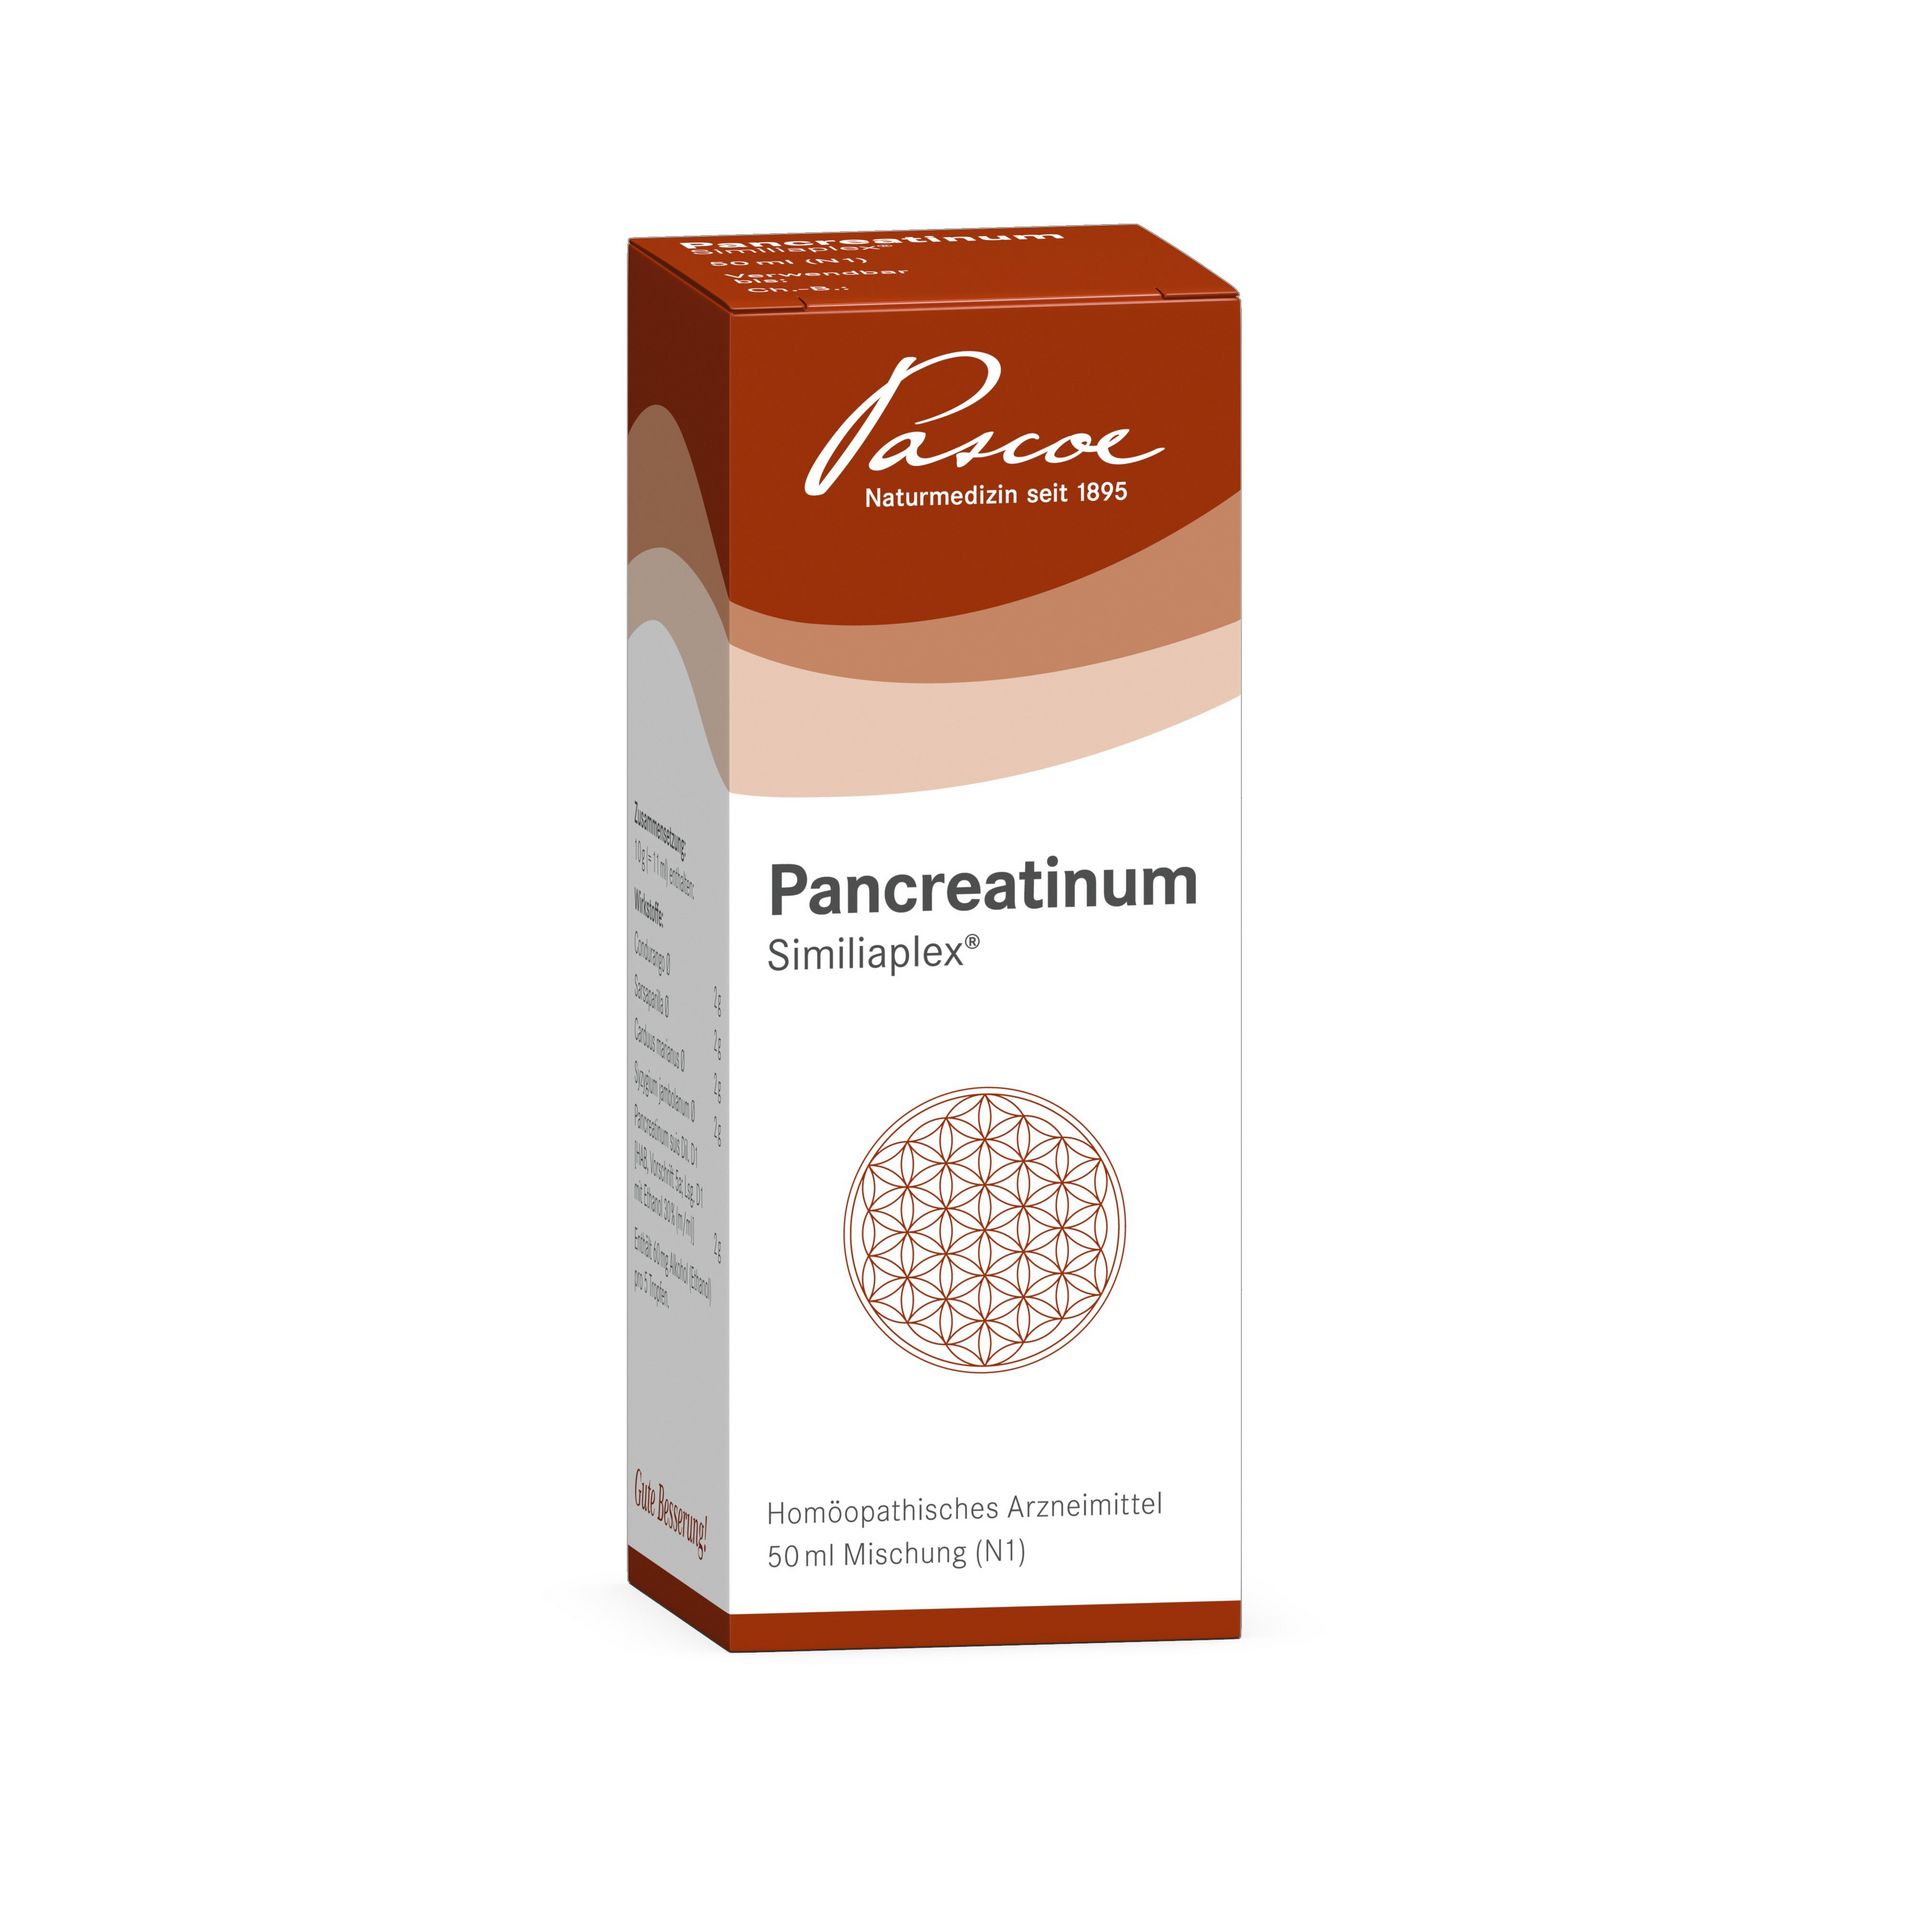 Pancreatinum Similiaplex 50 ml Packshot PZN 02068309